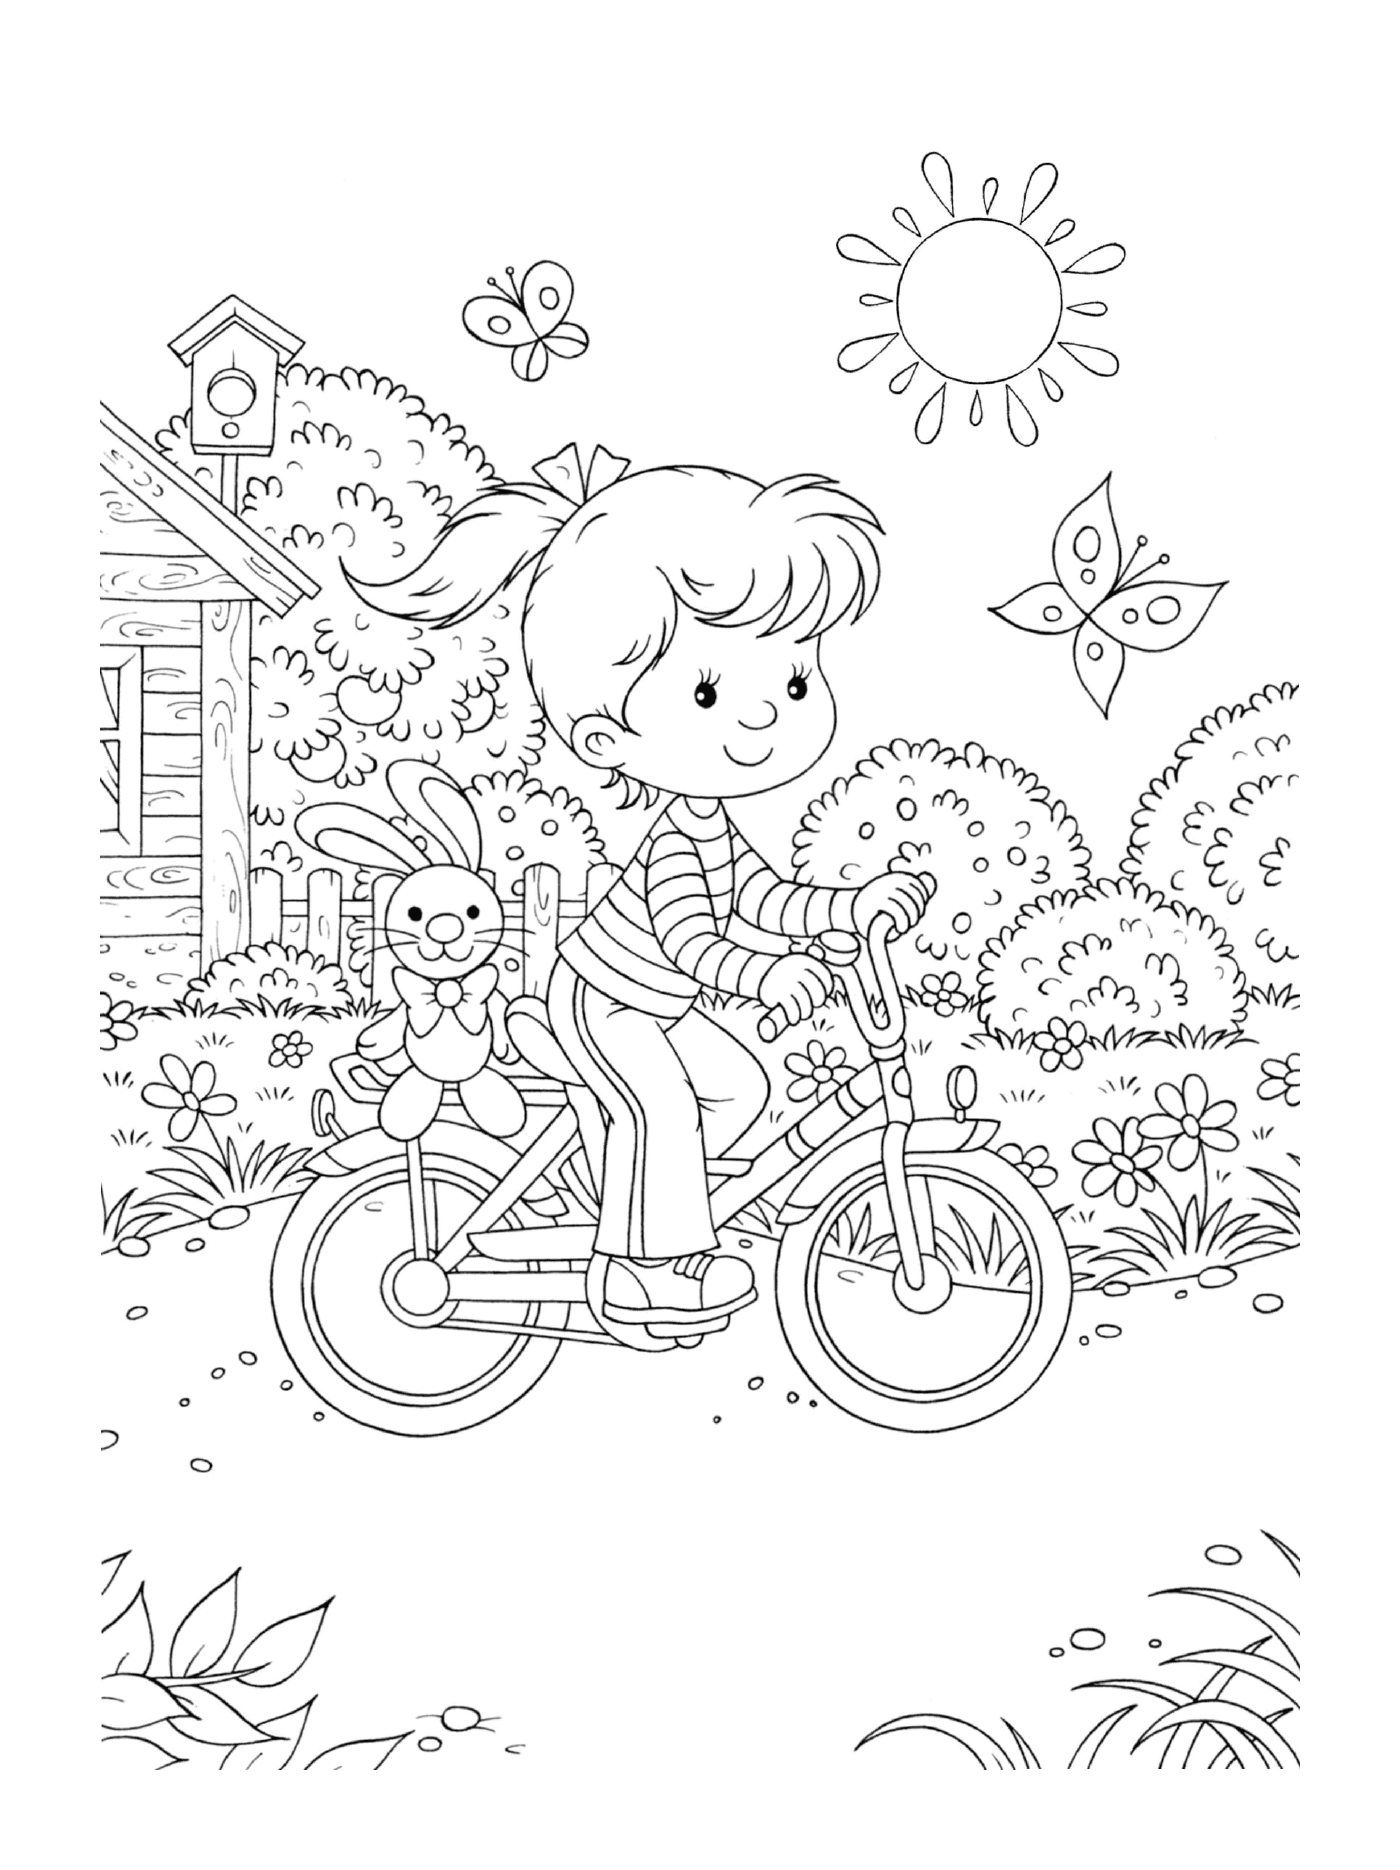   Une petite fille fait du vélo avec un lapin à l'arrière 